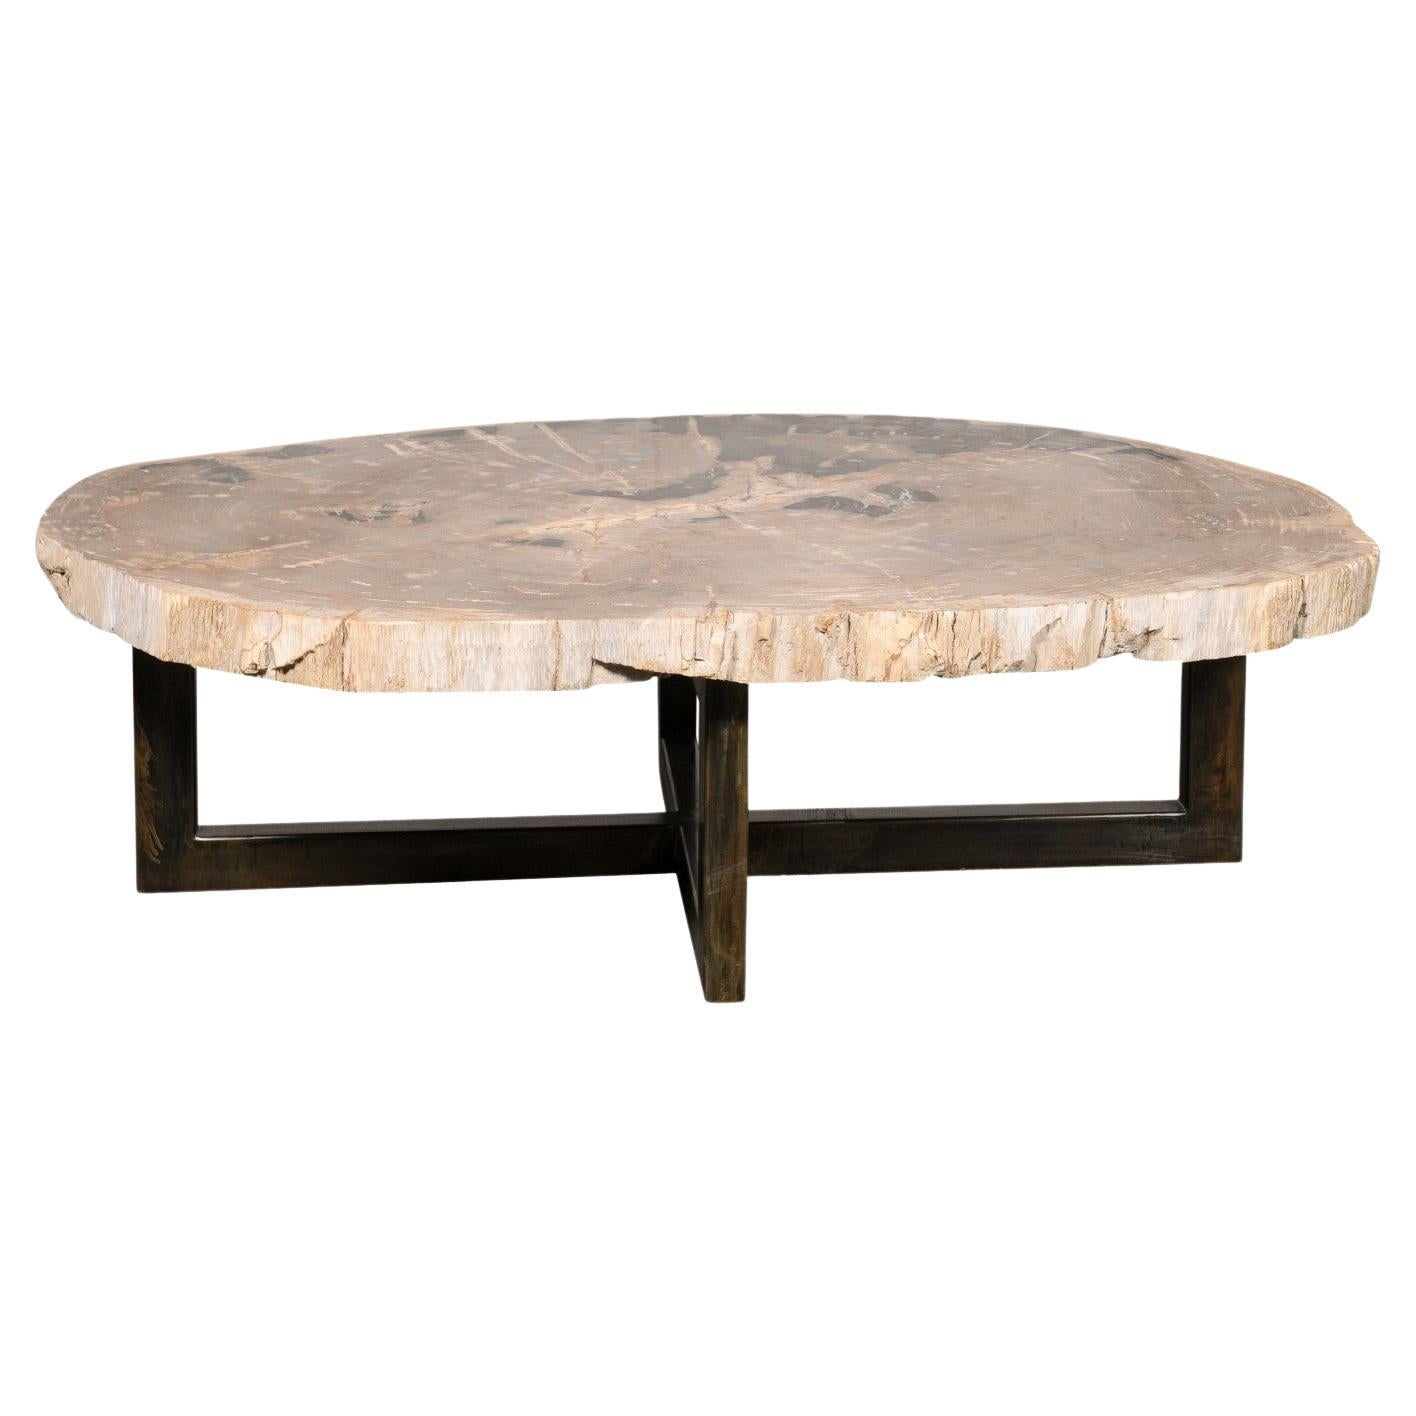 Oval-Shaped Petrified Wood Slab Coffee Table on Iron Base